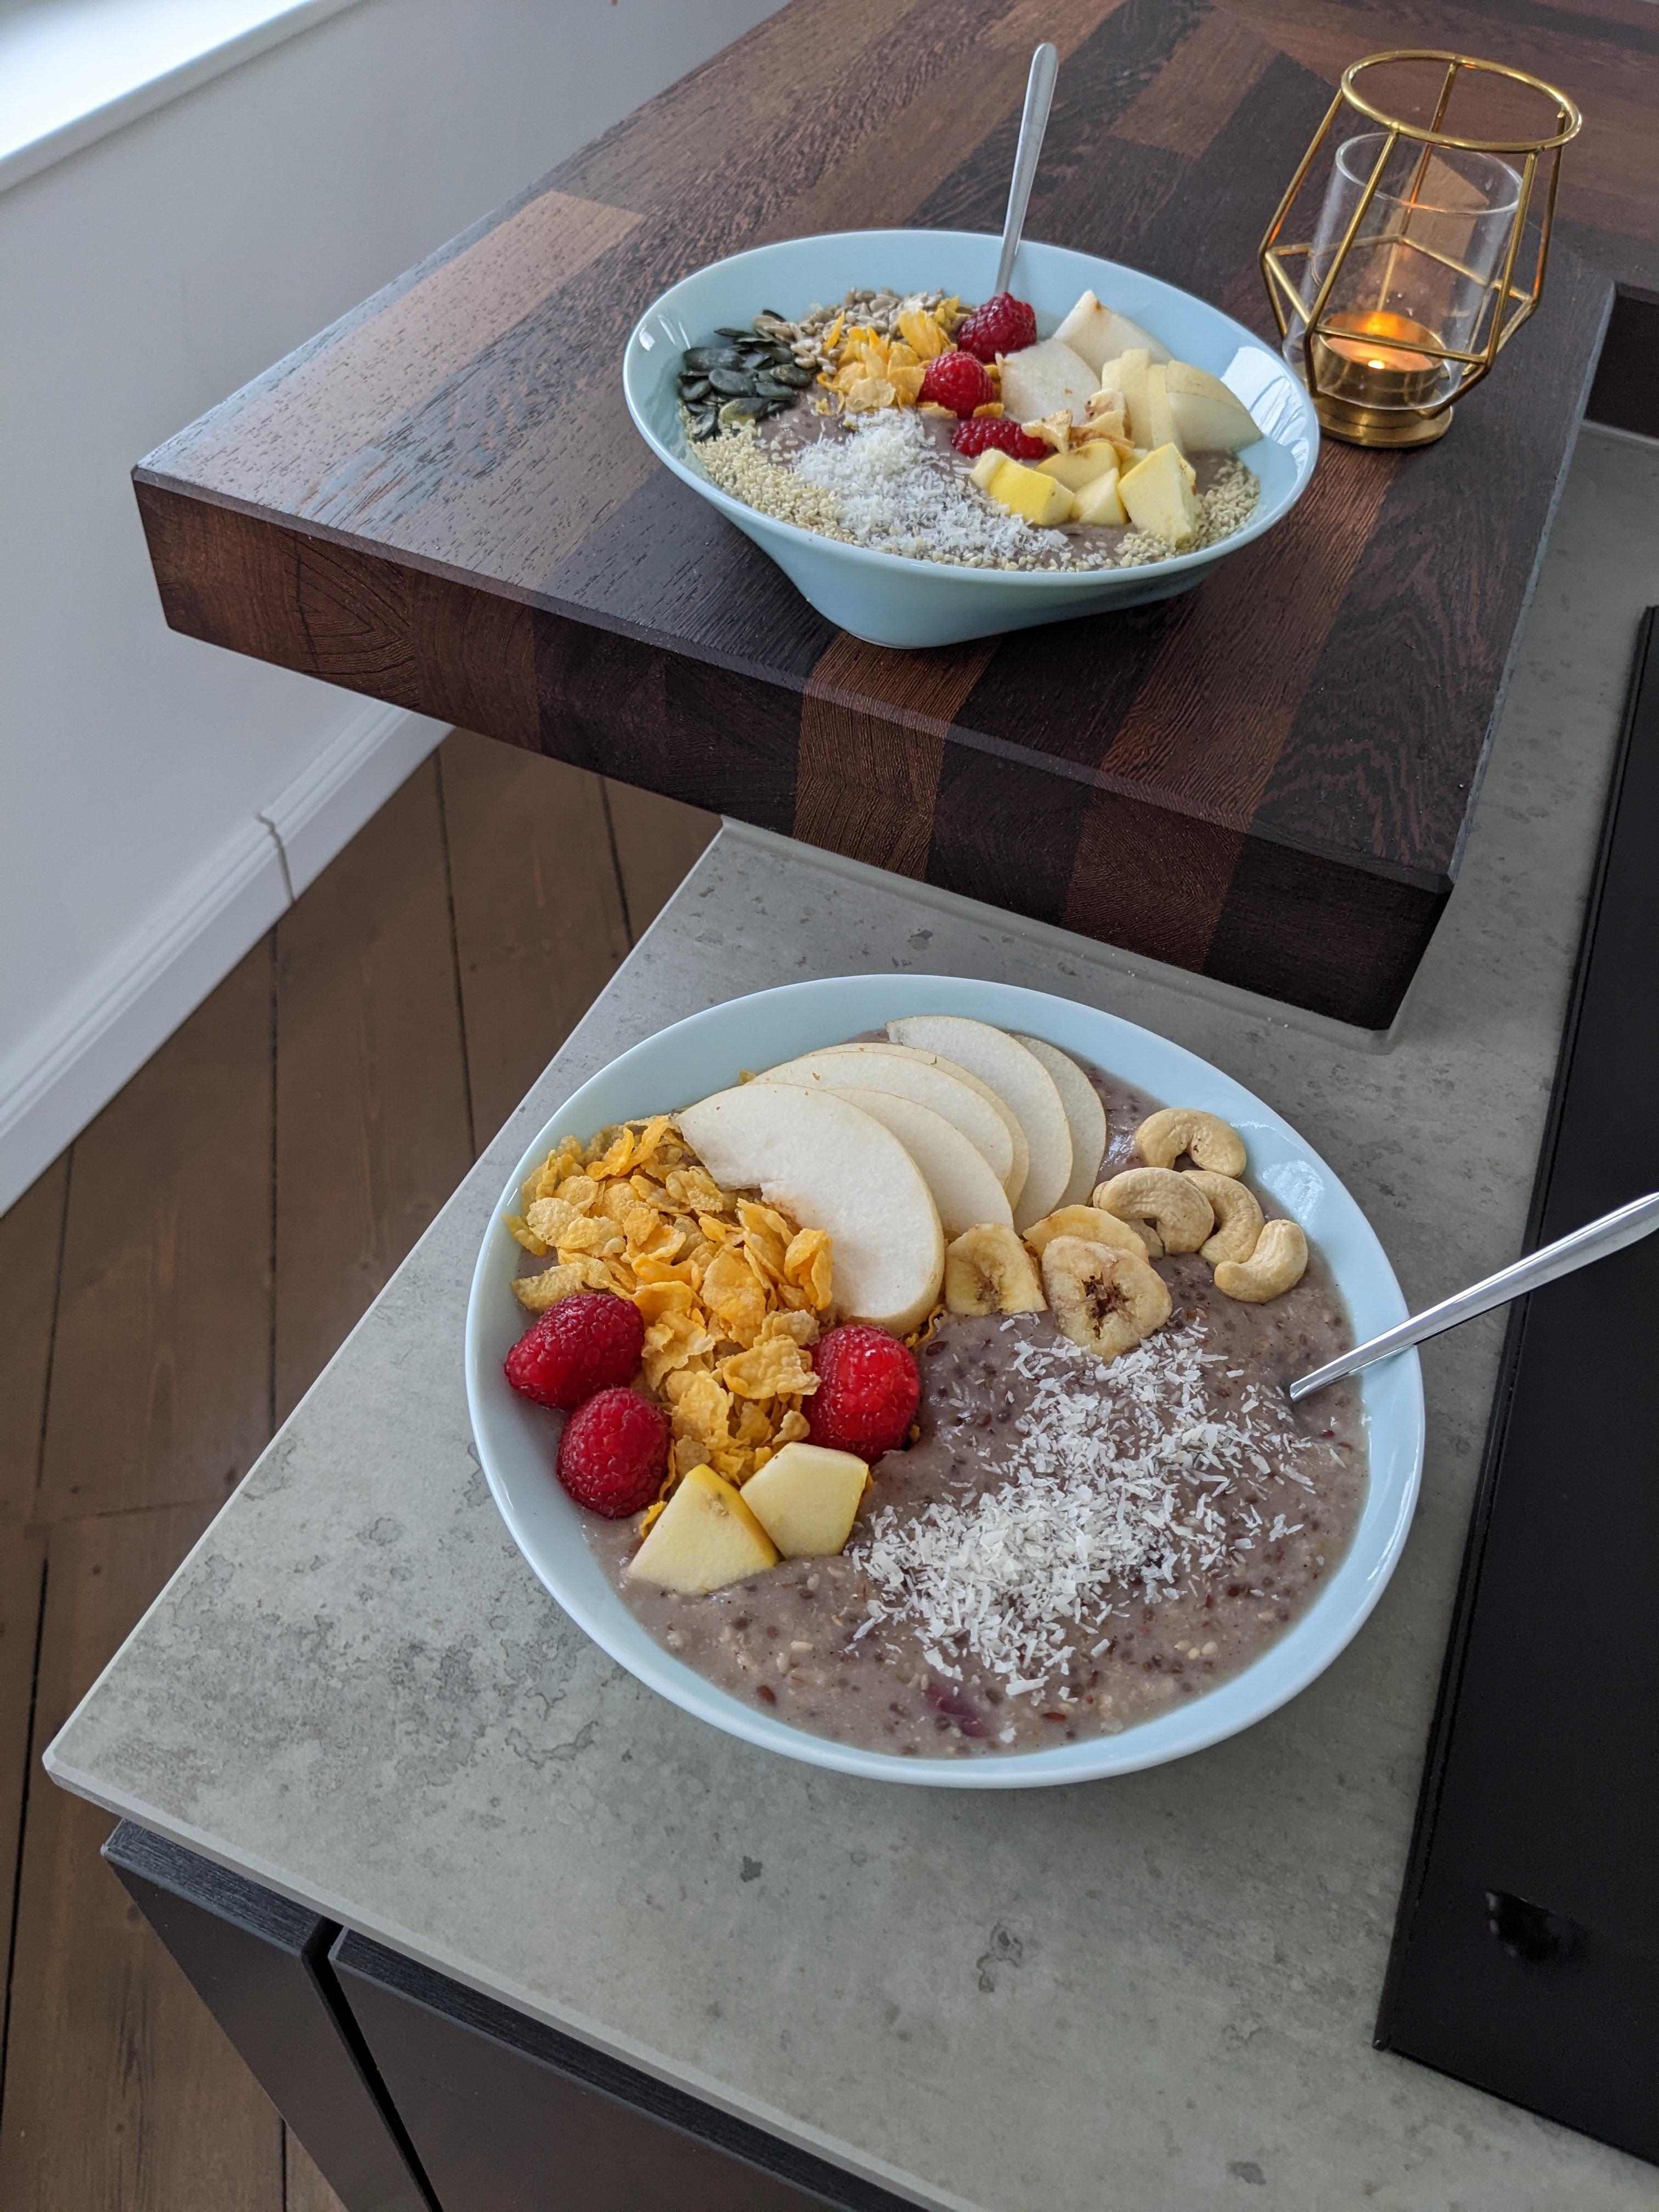 Beeren-Porridge-Bowl mit Nüssen und Samen.🫐Ich liebe übrigens unsere Kücheninsel.💚
#frühstück #food #brunch #❤️